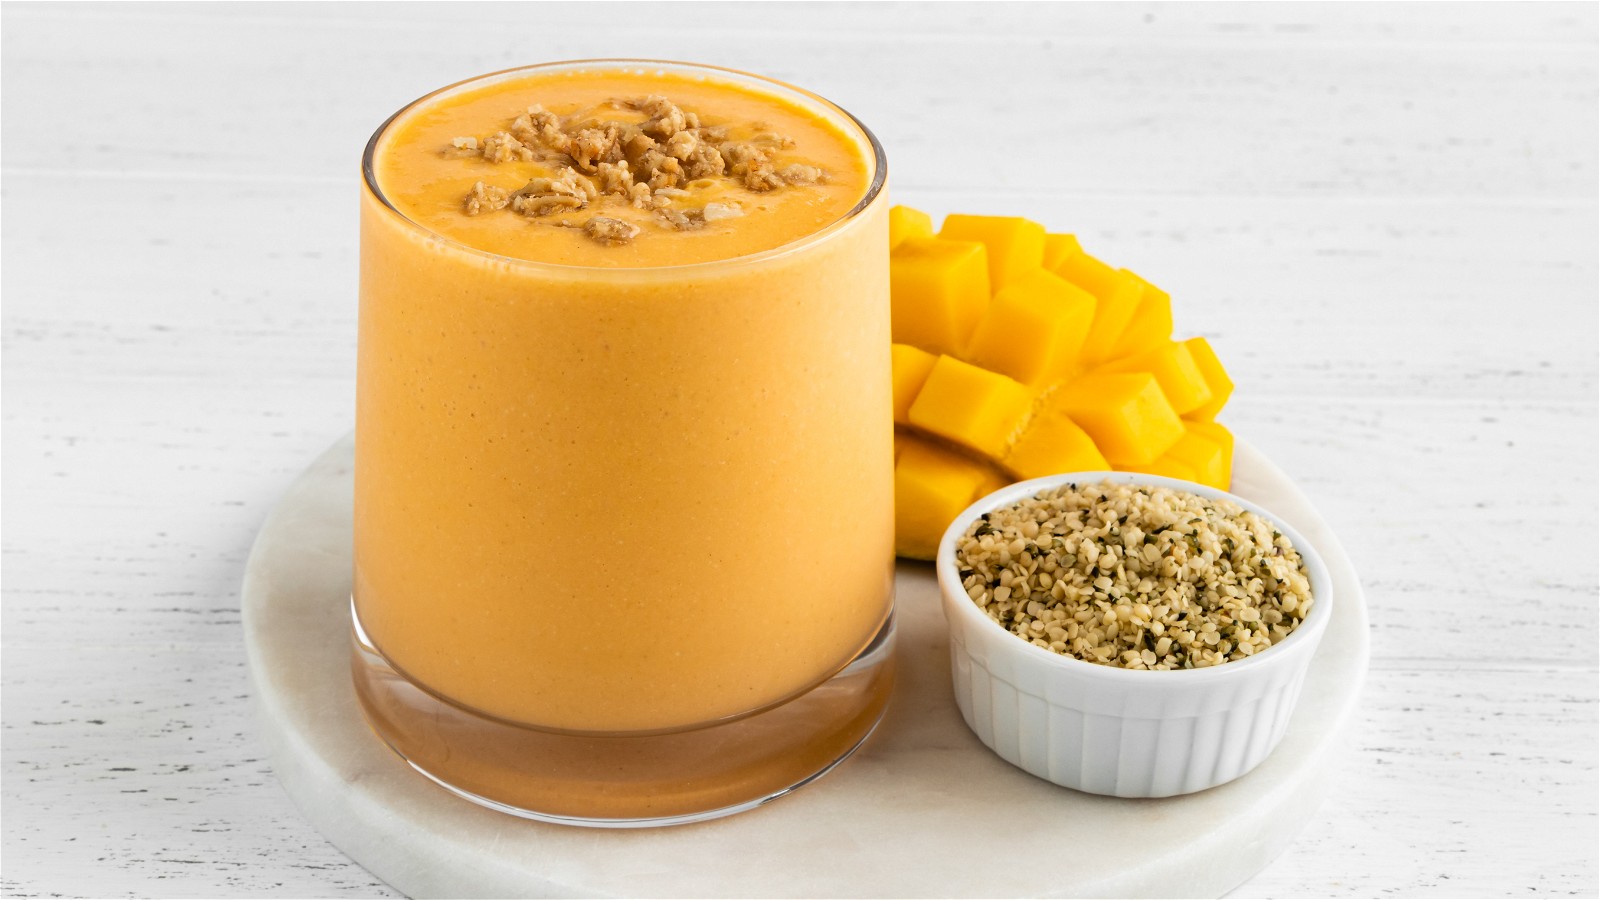 Image of SmoothieBox Orange Mango Smoothie Recipe Card